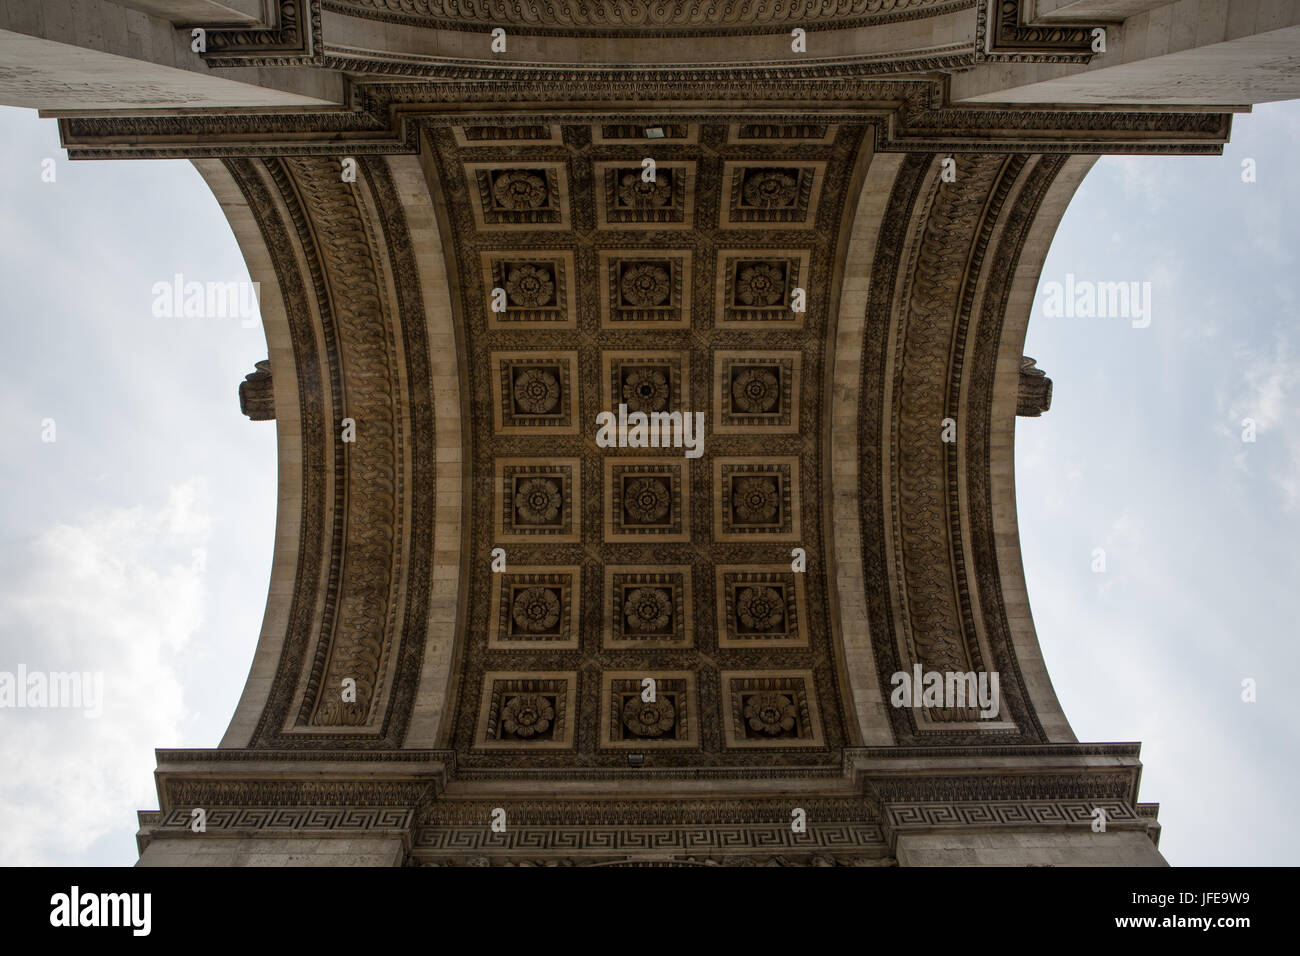 Plus de détails, de secours de sculpture et d'architecture à l'intérieur de l'Arc de Triomphe. Banque D'Images